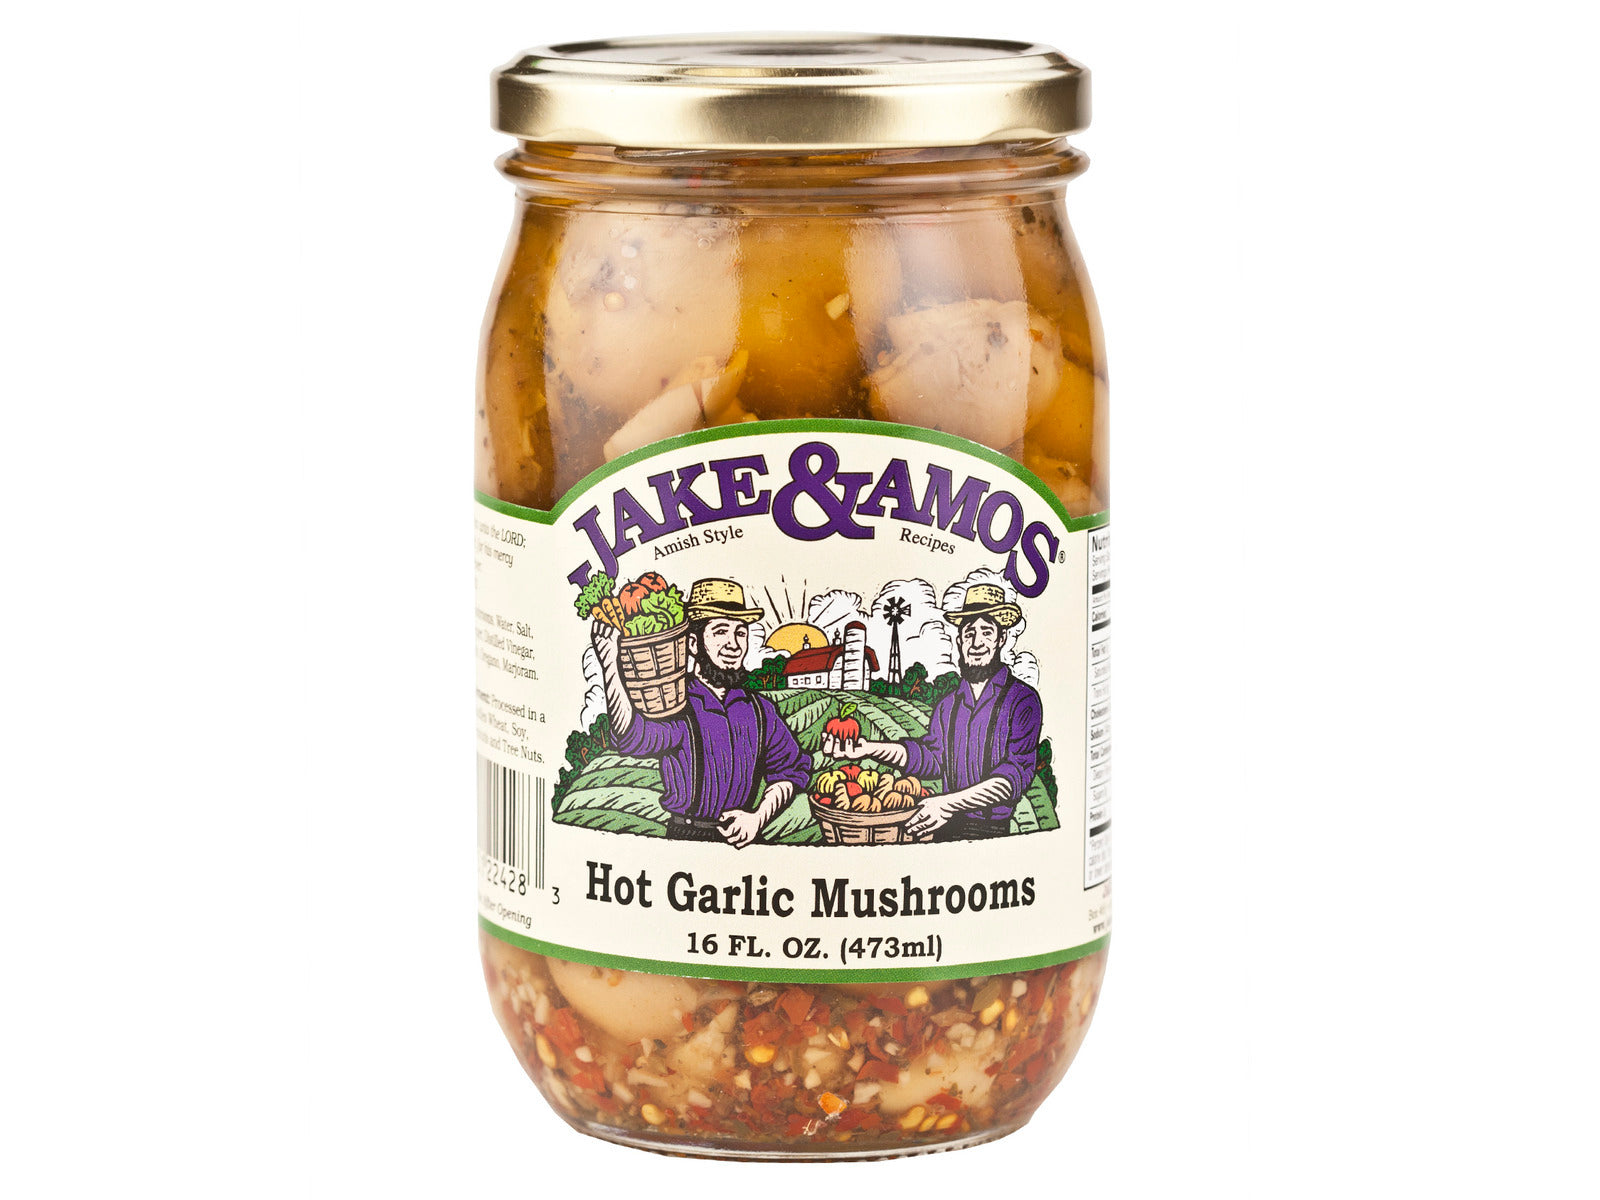 Amish - Pickled Mushrooms - Hot Garlic - Jake & Amos